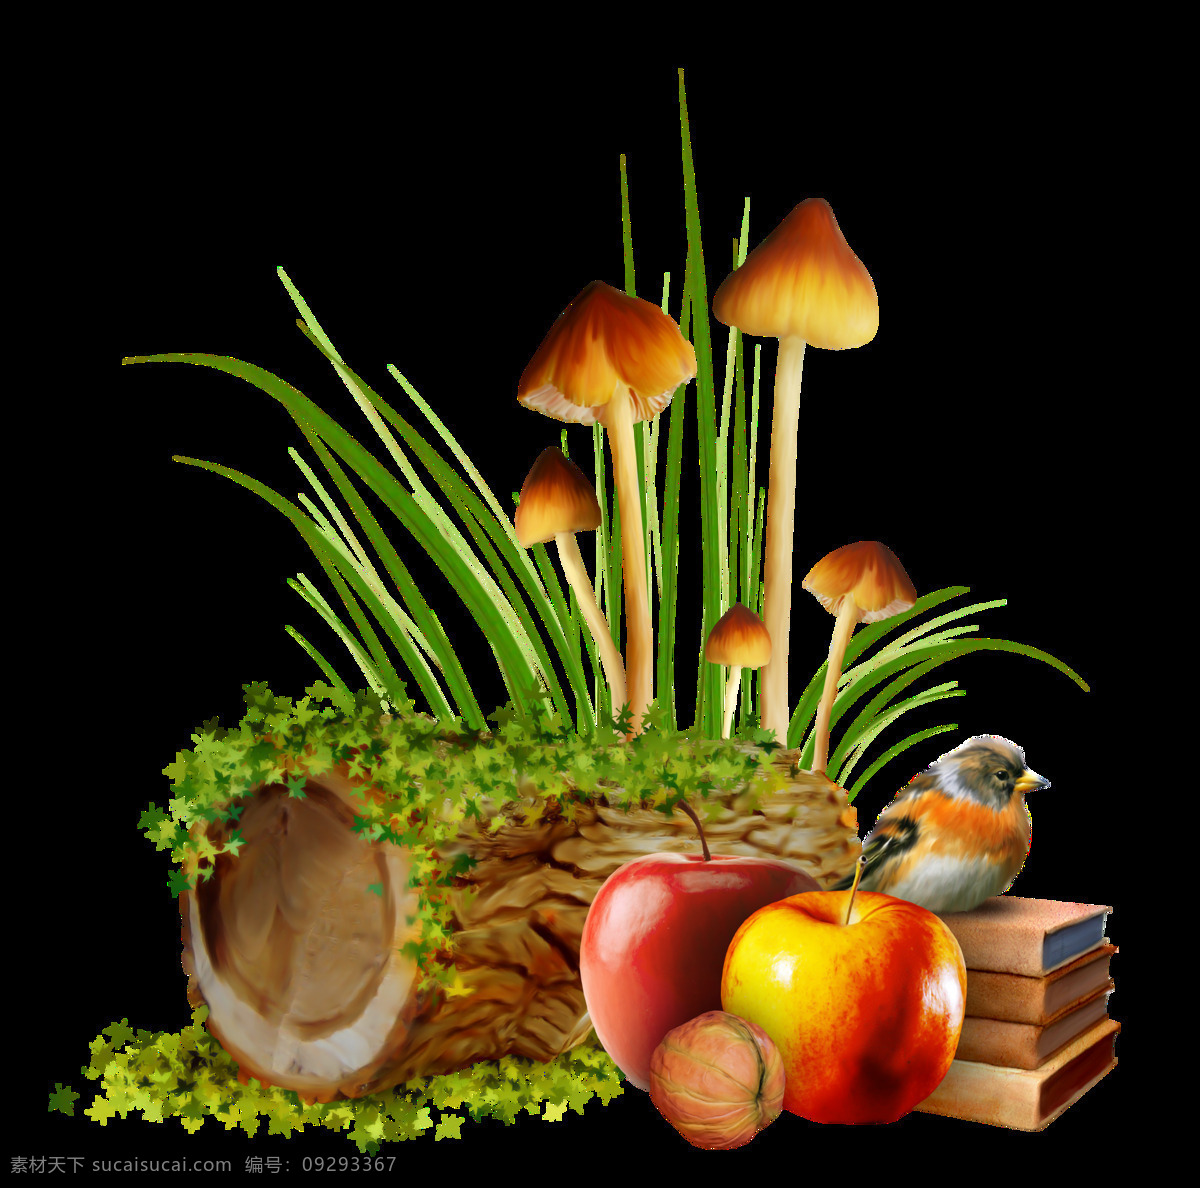 手绘 逼真 水果 蔬菜 油画 透明 绿草 苹果 小鸟 蘑菇 透明素材 免扣素材 装饰图片